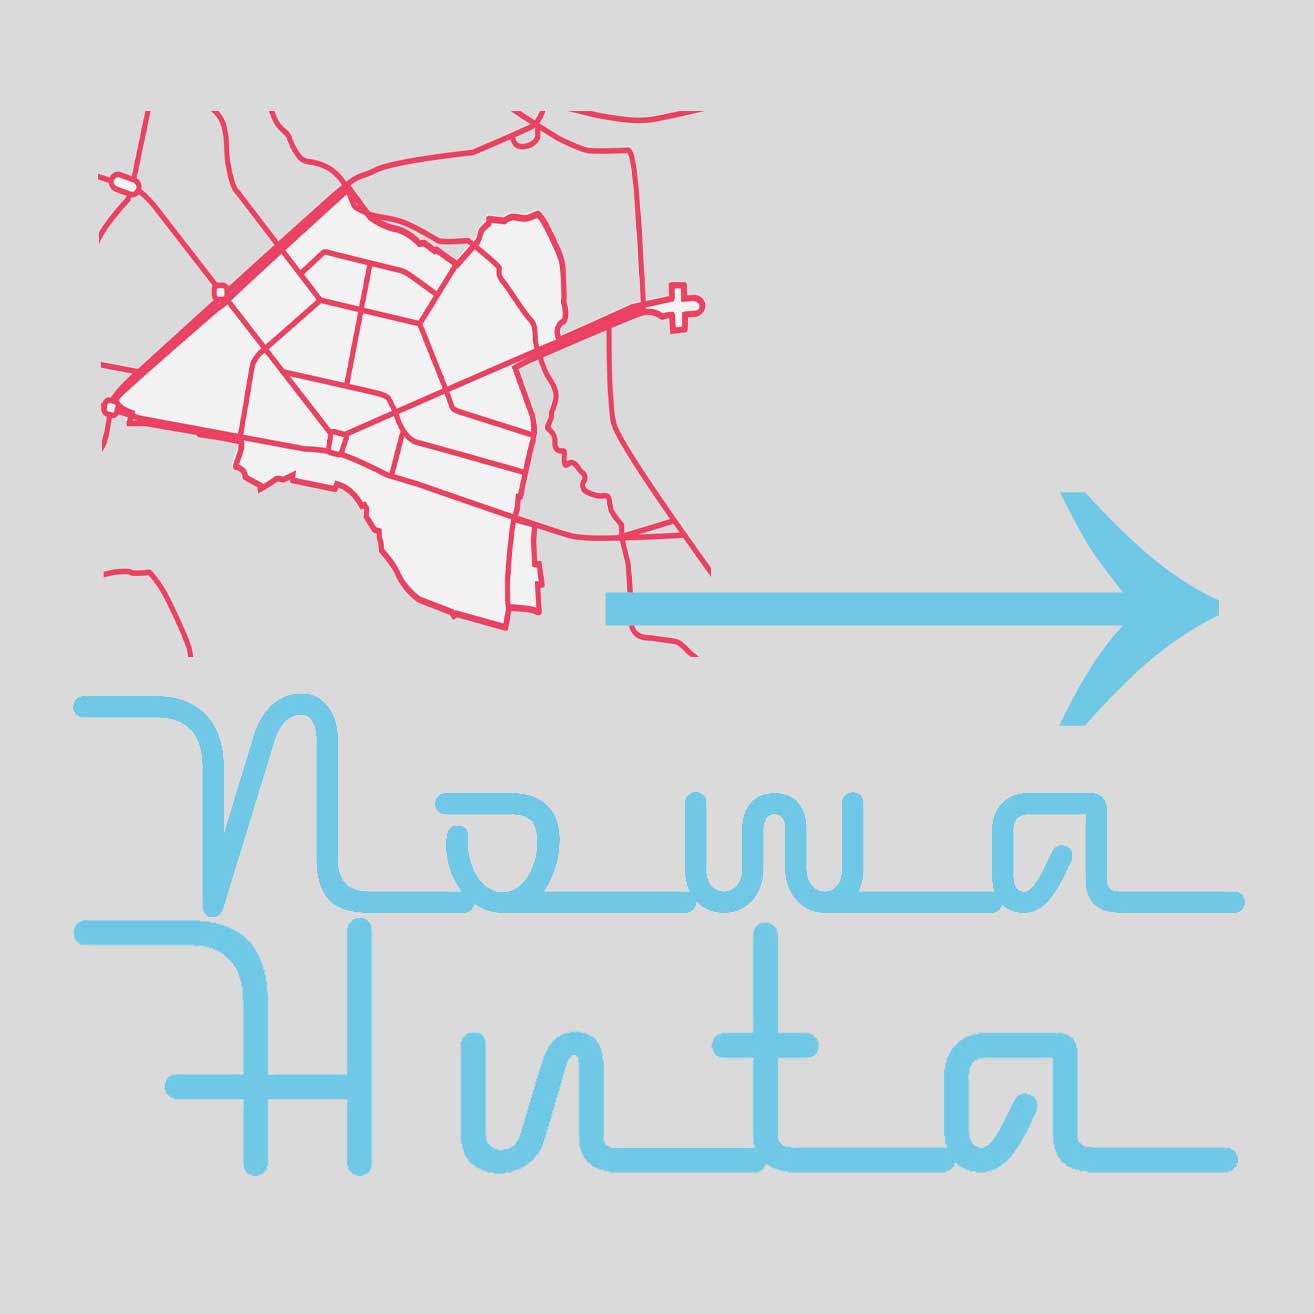 Grafika o szarym tle przedstawiająca niebieski napis Nowa Huta w stylu neonu, zarys mapy dzielnicy w kolorze czerwonym i niebieską strzałkę skierowaną w prawą stronę.